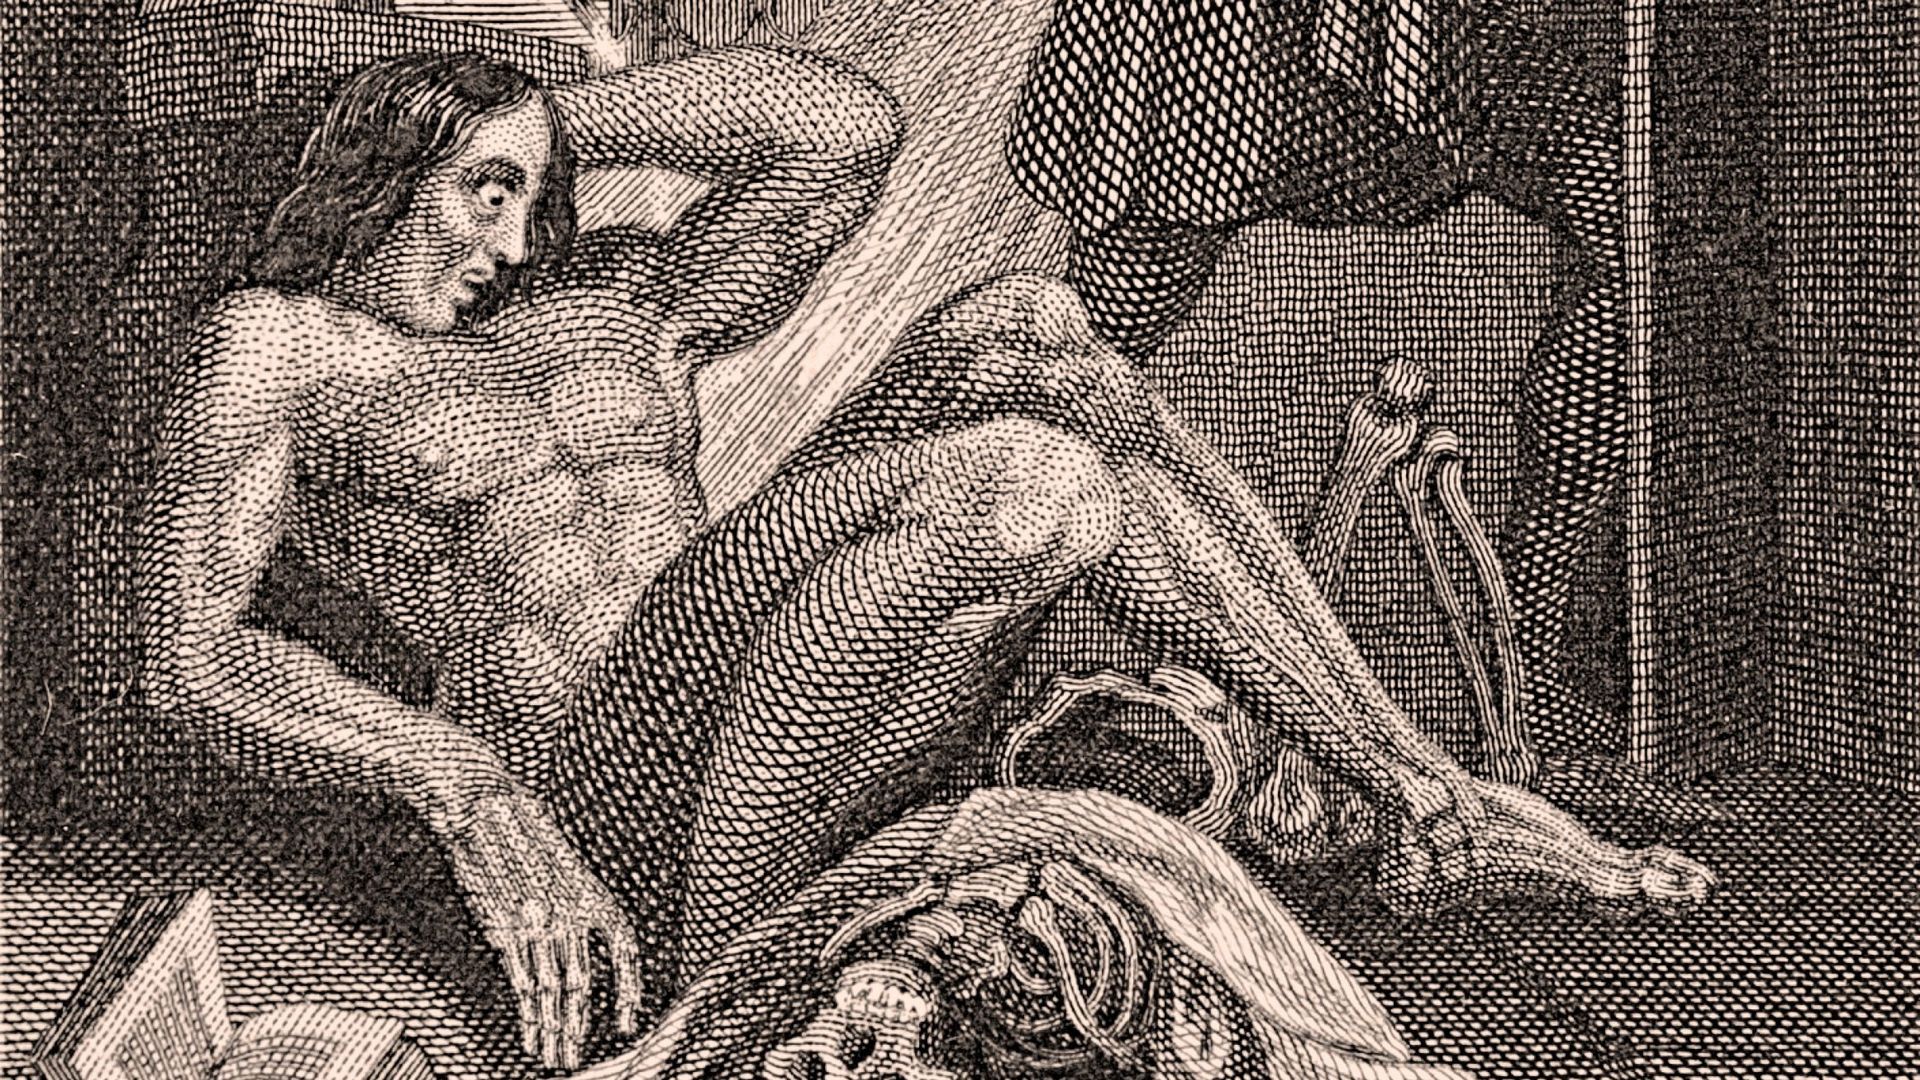 Frontispice l’édition de 1831 de "Frankenstein" de Mary Shelley,